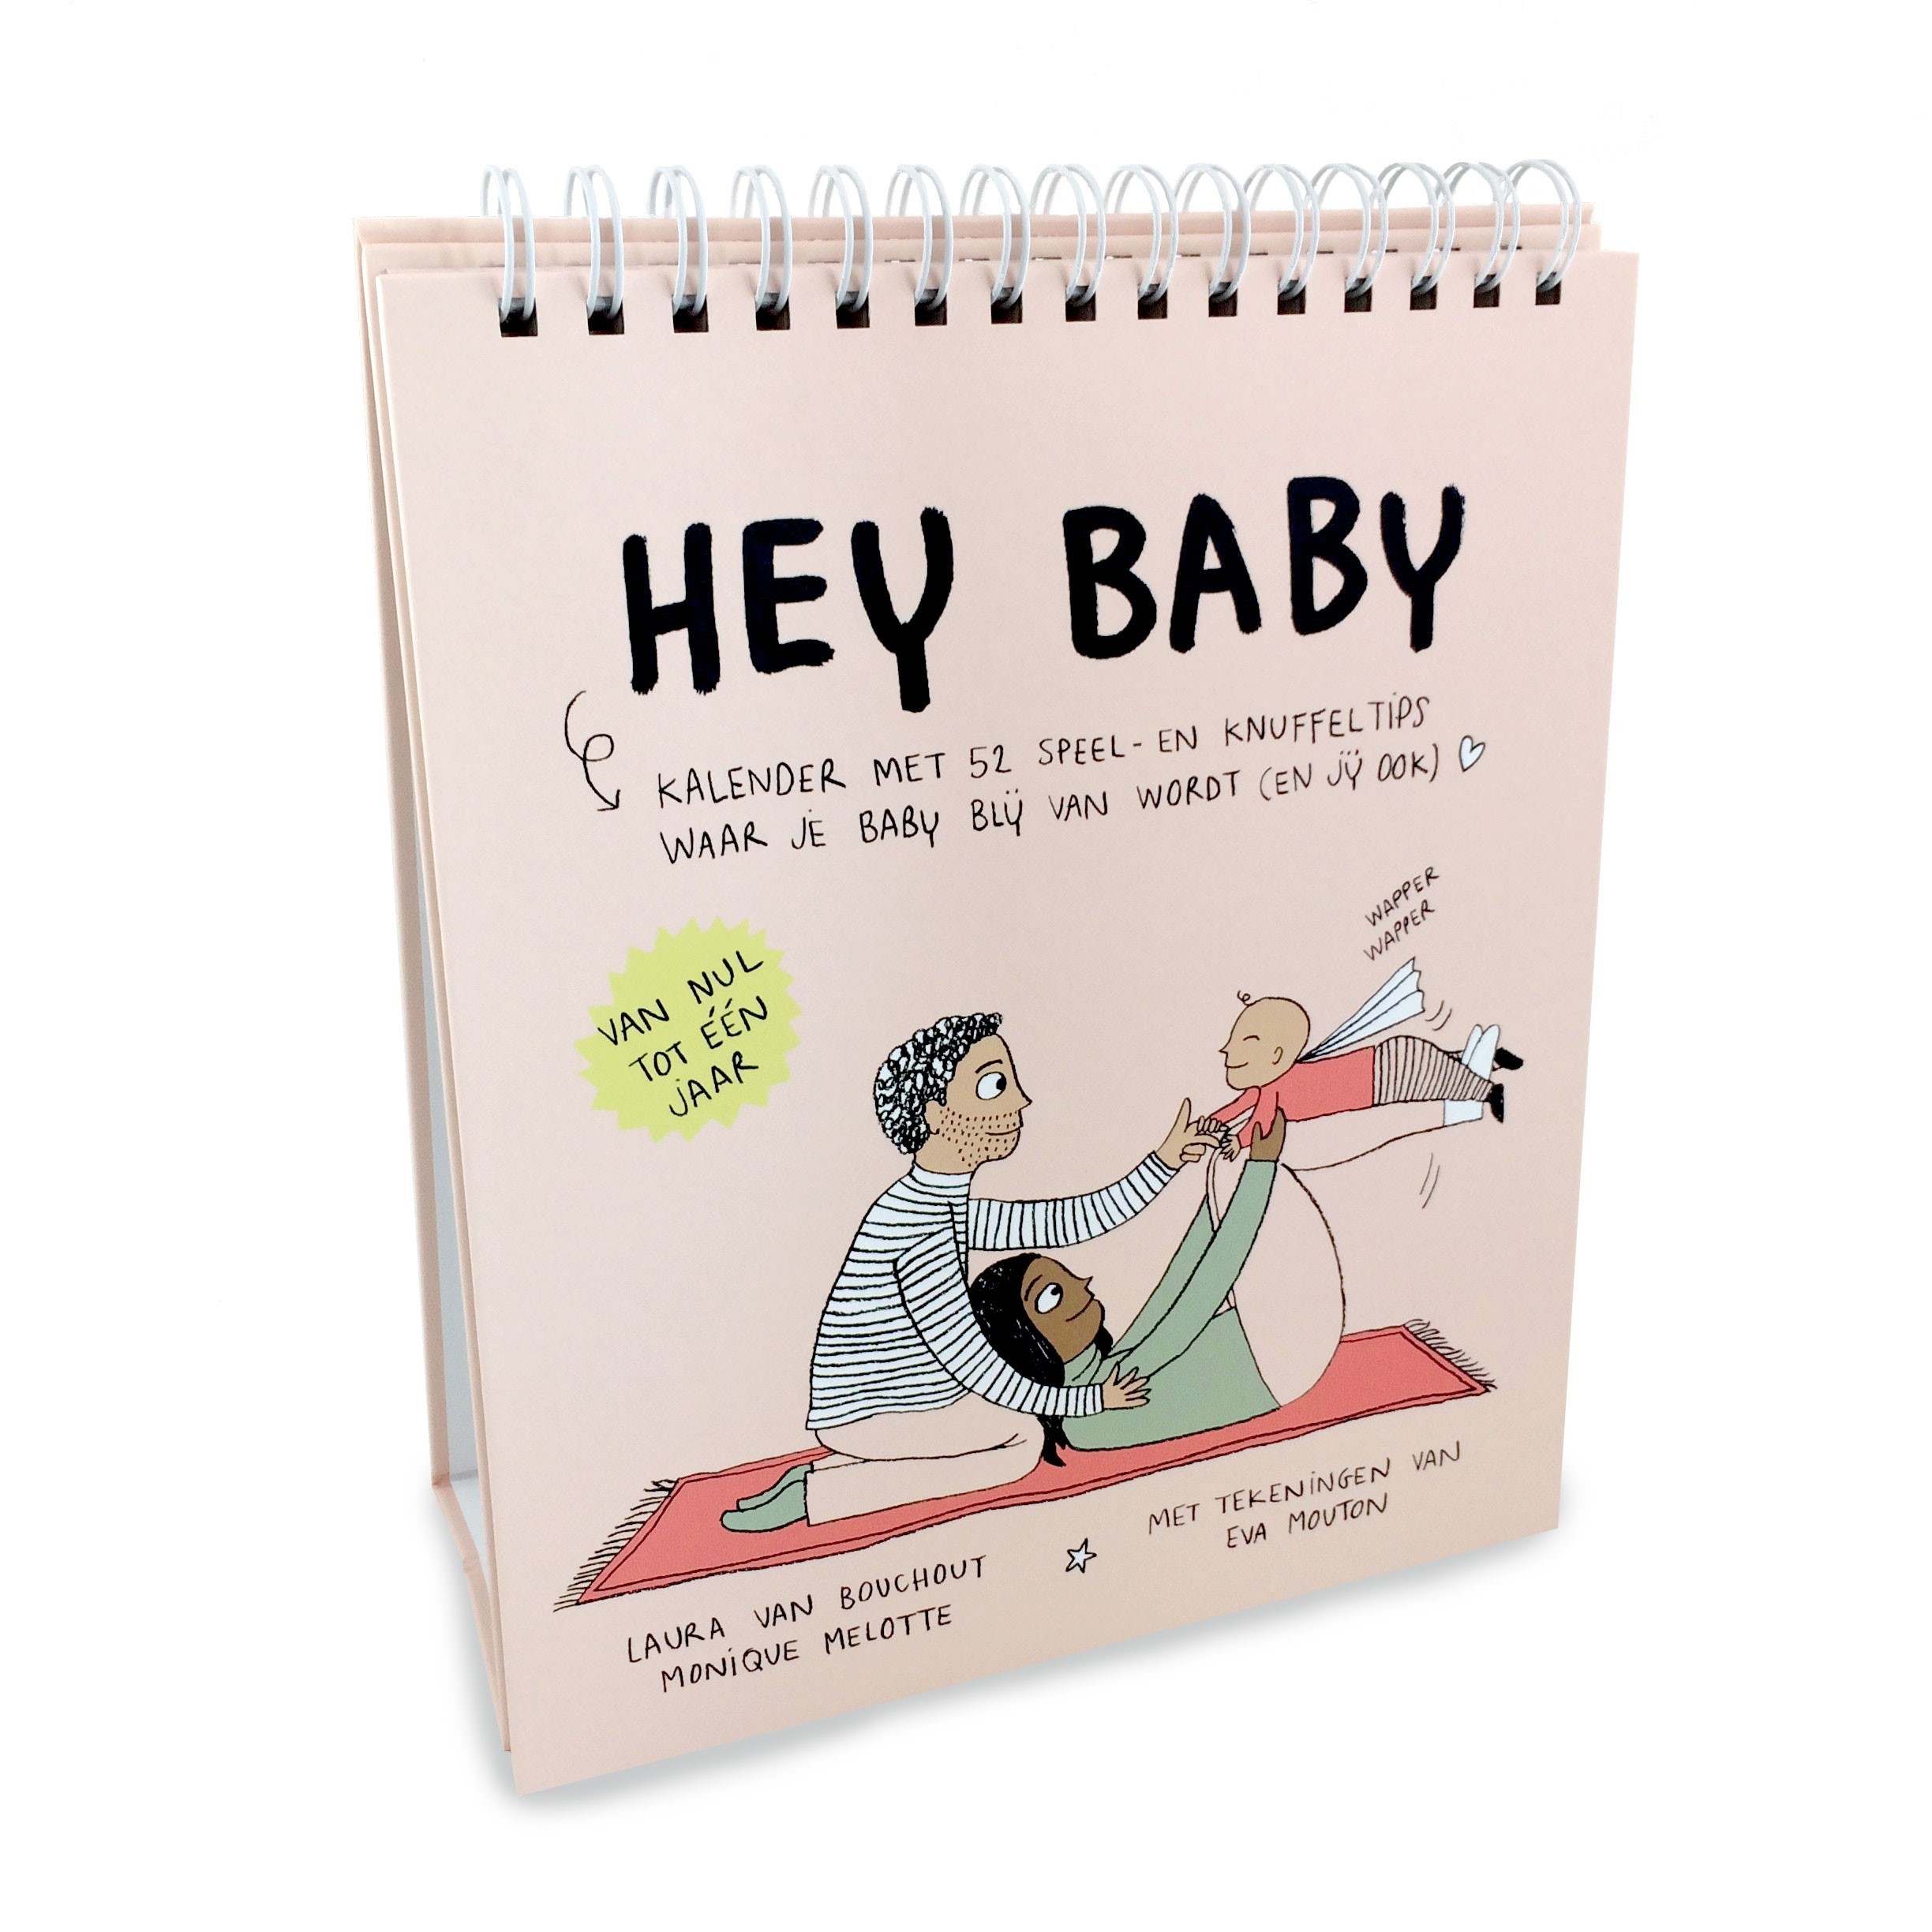 Hey baby kalender verkrijgbaar bij Erika Bauwens